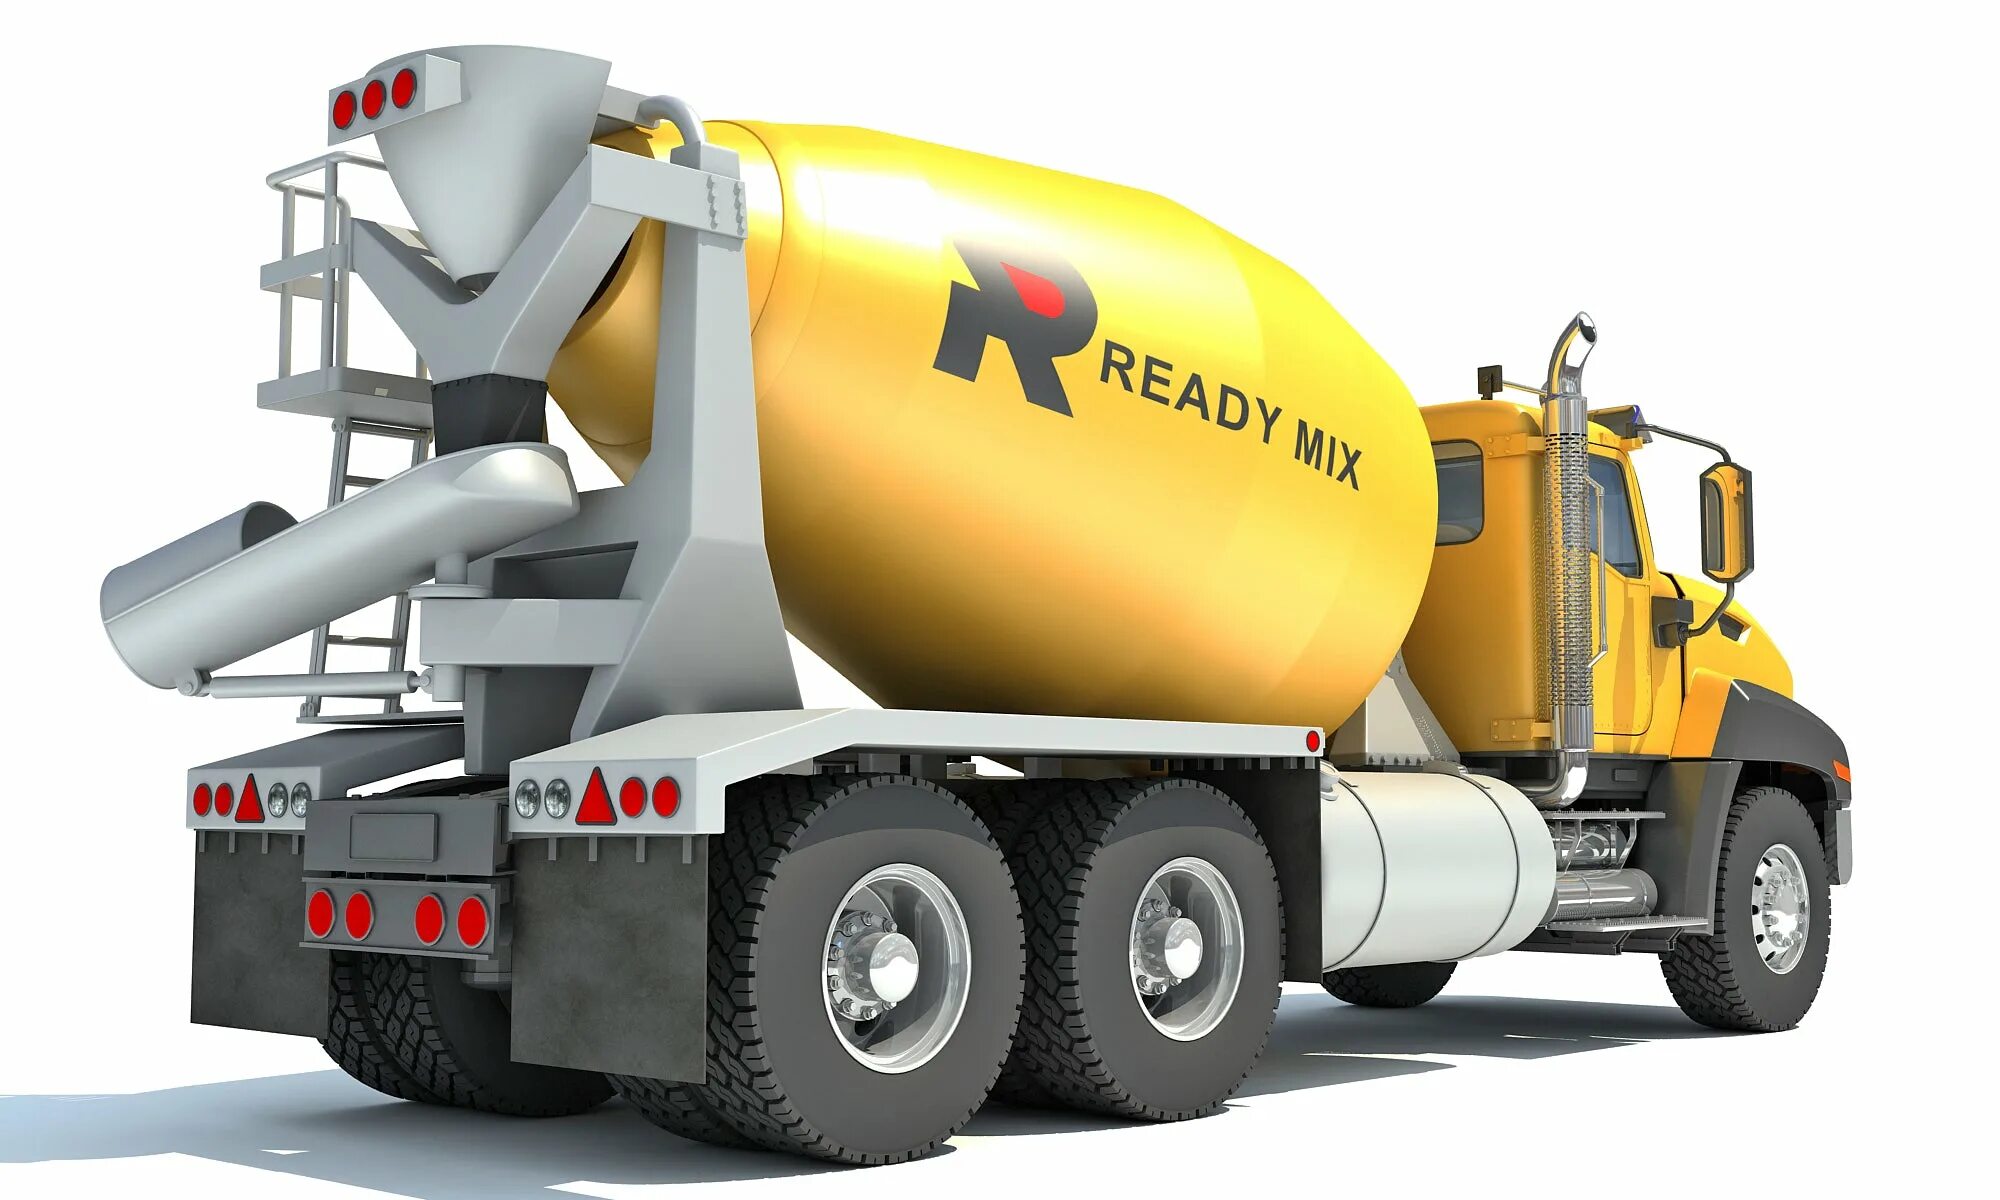 Concrete mixer. Автобетоносмеситель Pegaso cuadradas 2089 Mixer. Бетономешалка Concrete Mixer. Машина Truck Concrete Mixer. Sitrak автобетоносмеситель.